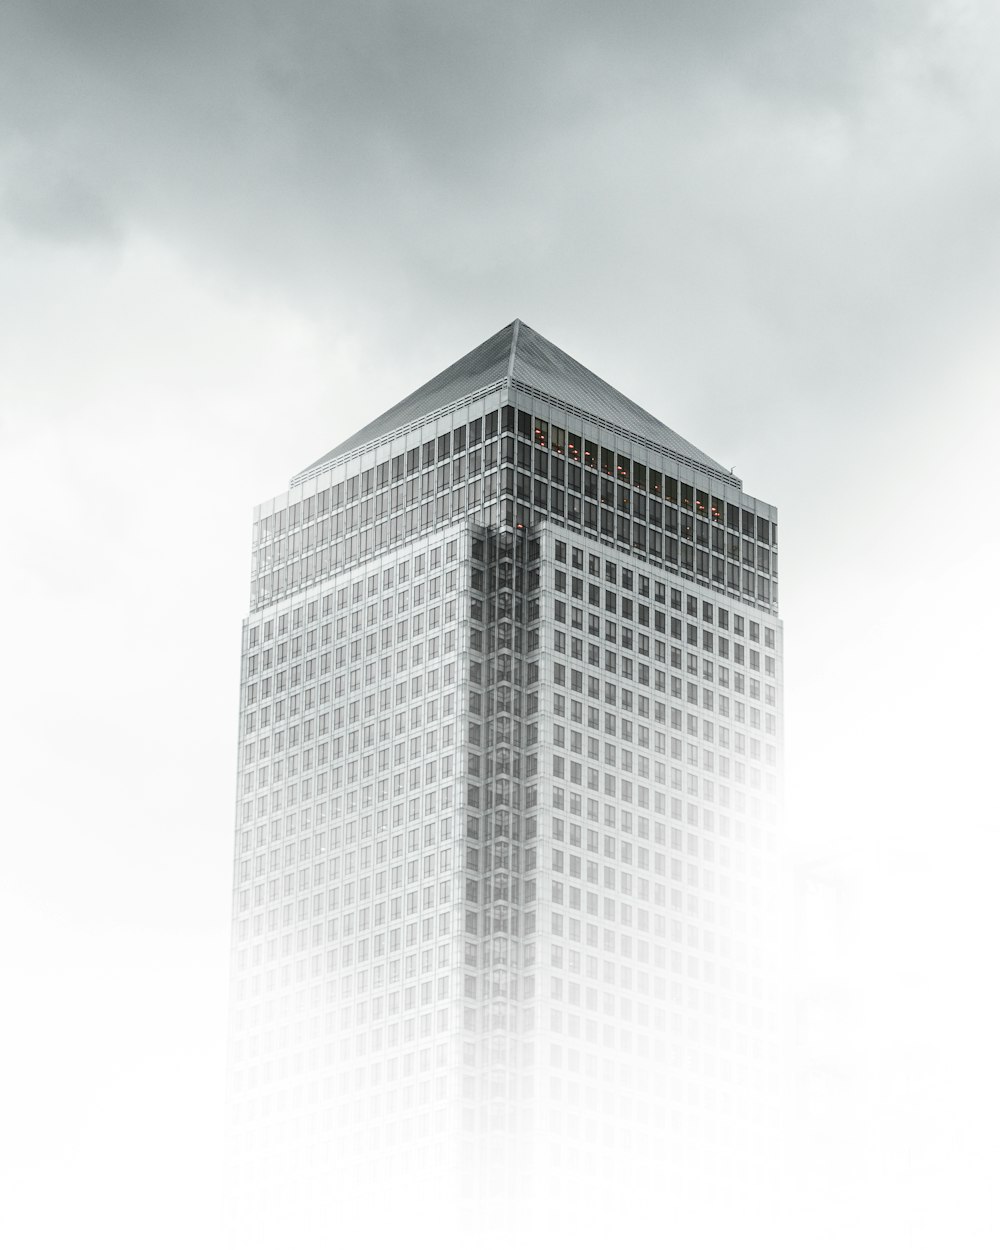 Fotografía de vista de gusano de edificio de hormigón blanco y gris bajo cielo nublado